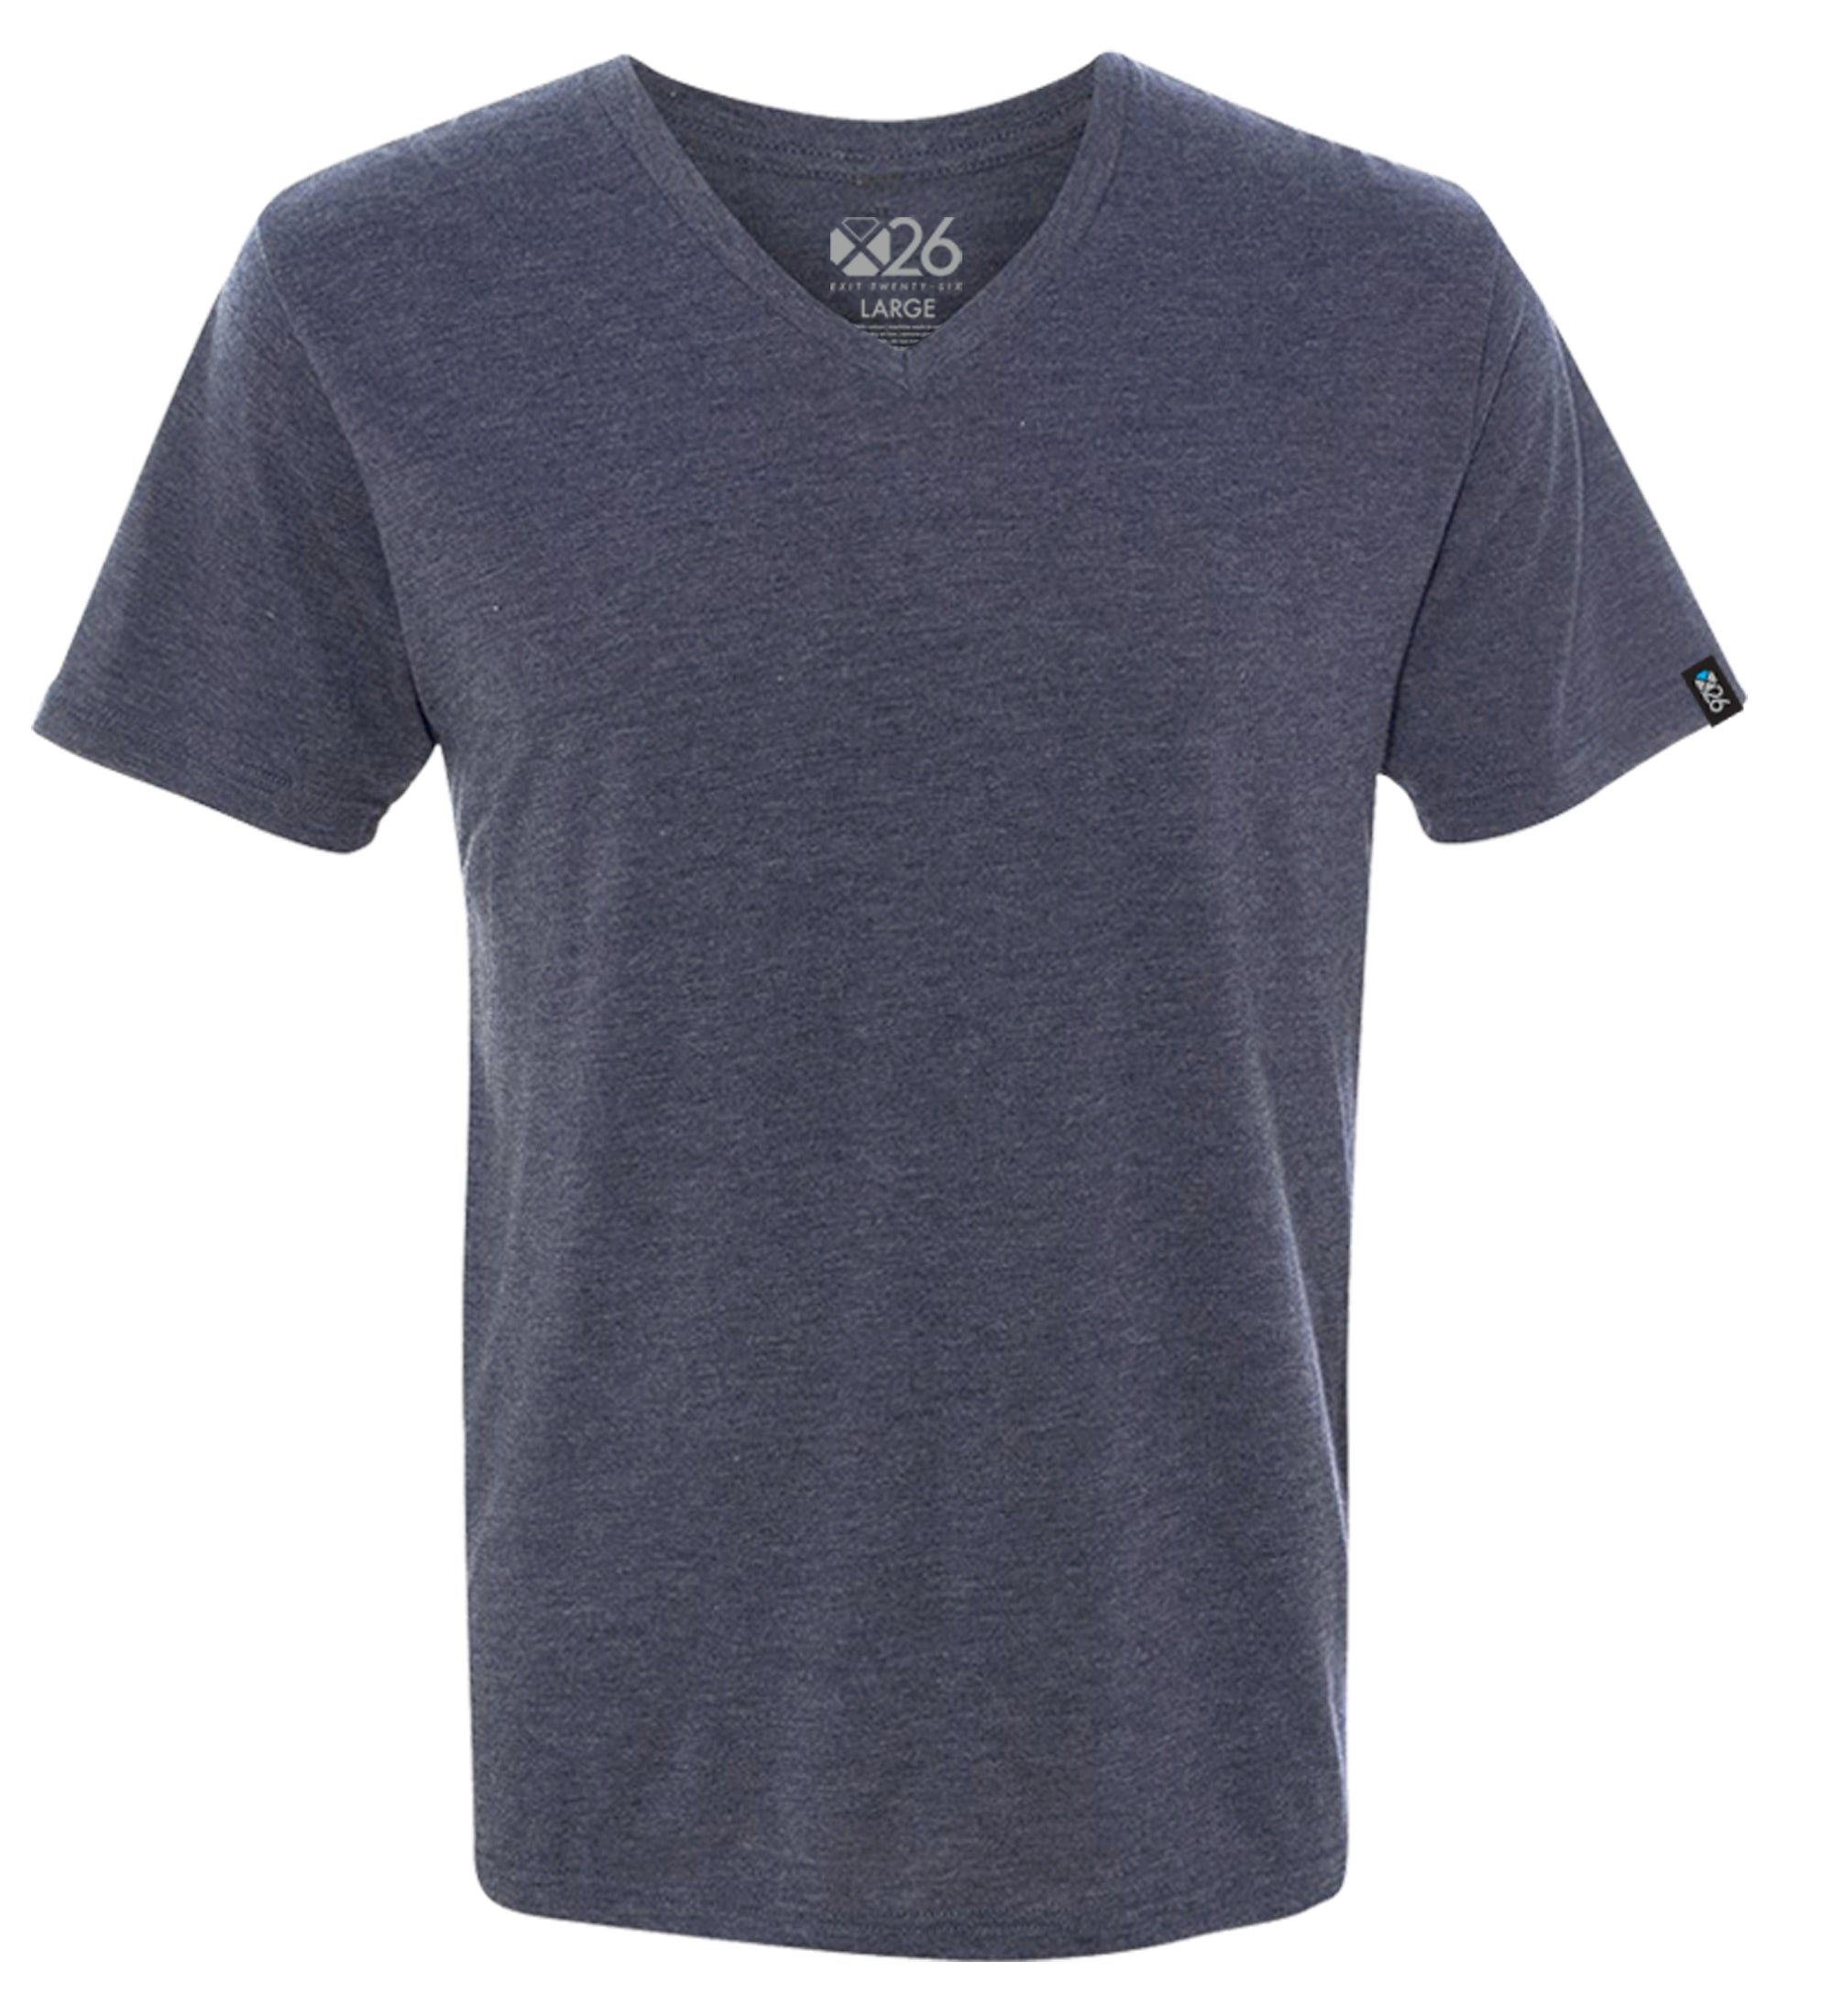 Tri-Blend Soft Wash Jersey V Neck T-Shirts – Exit 26 Apparel